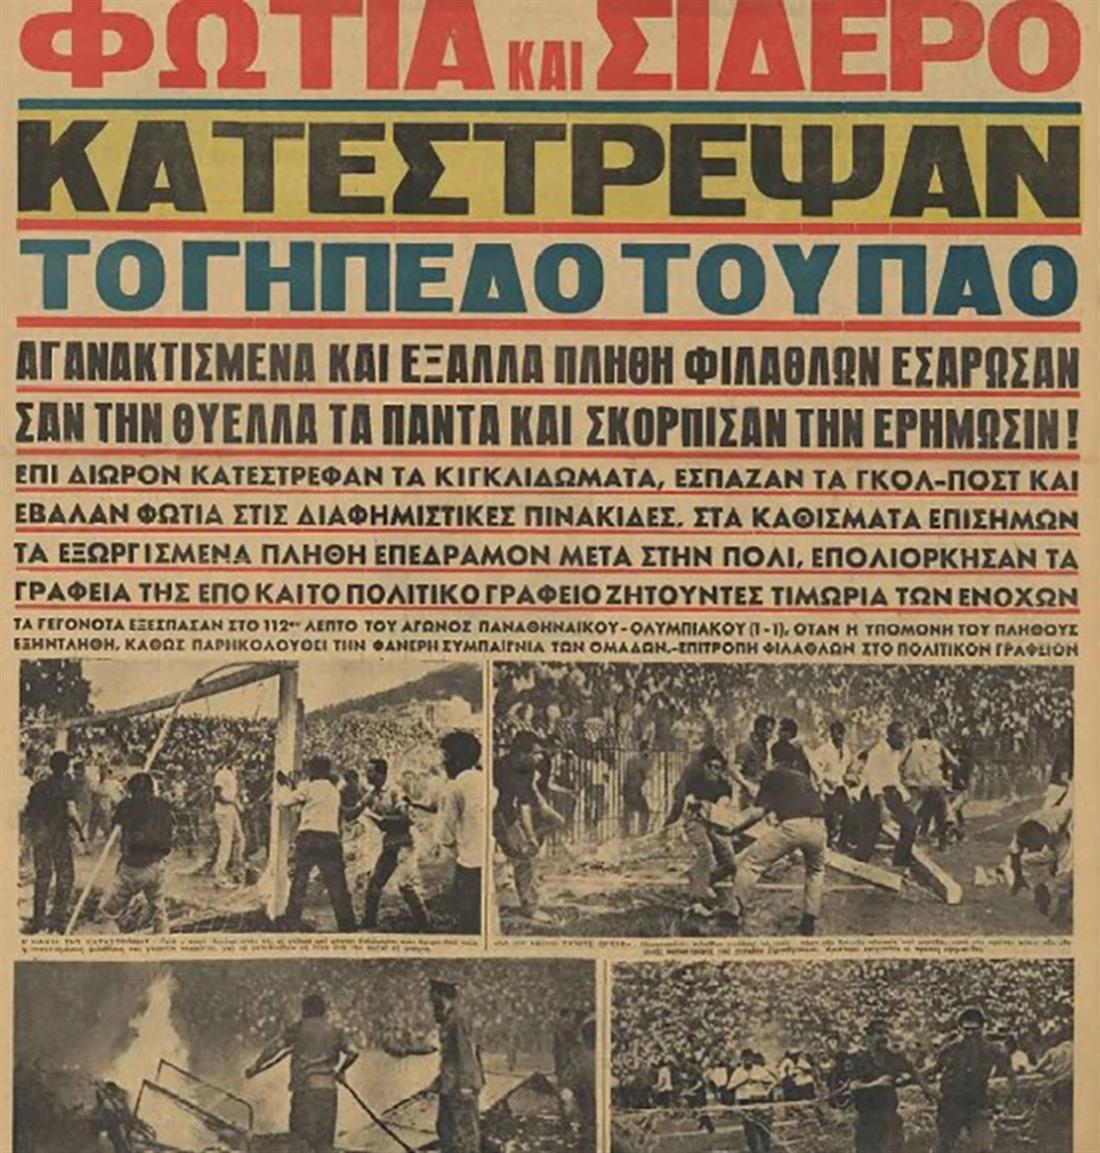 17 Ιουνίου 1964 - Παναθηναϊκός - Ολυμπιακός - Κύπελλο Ελλάδος